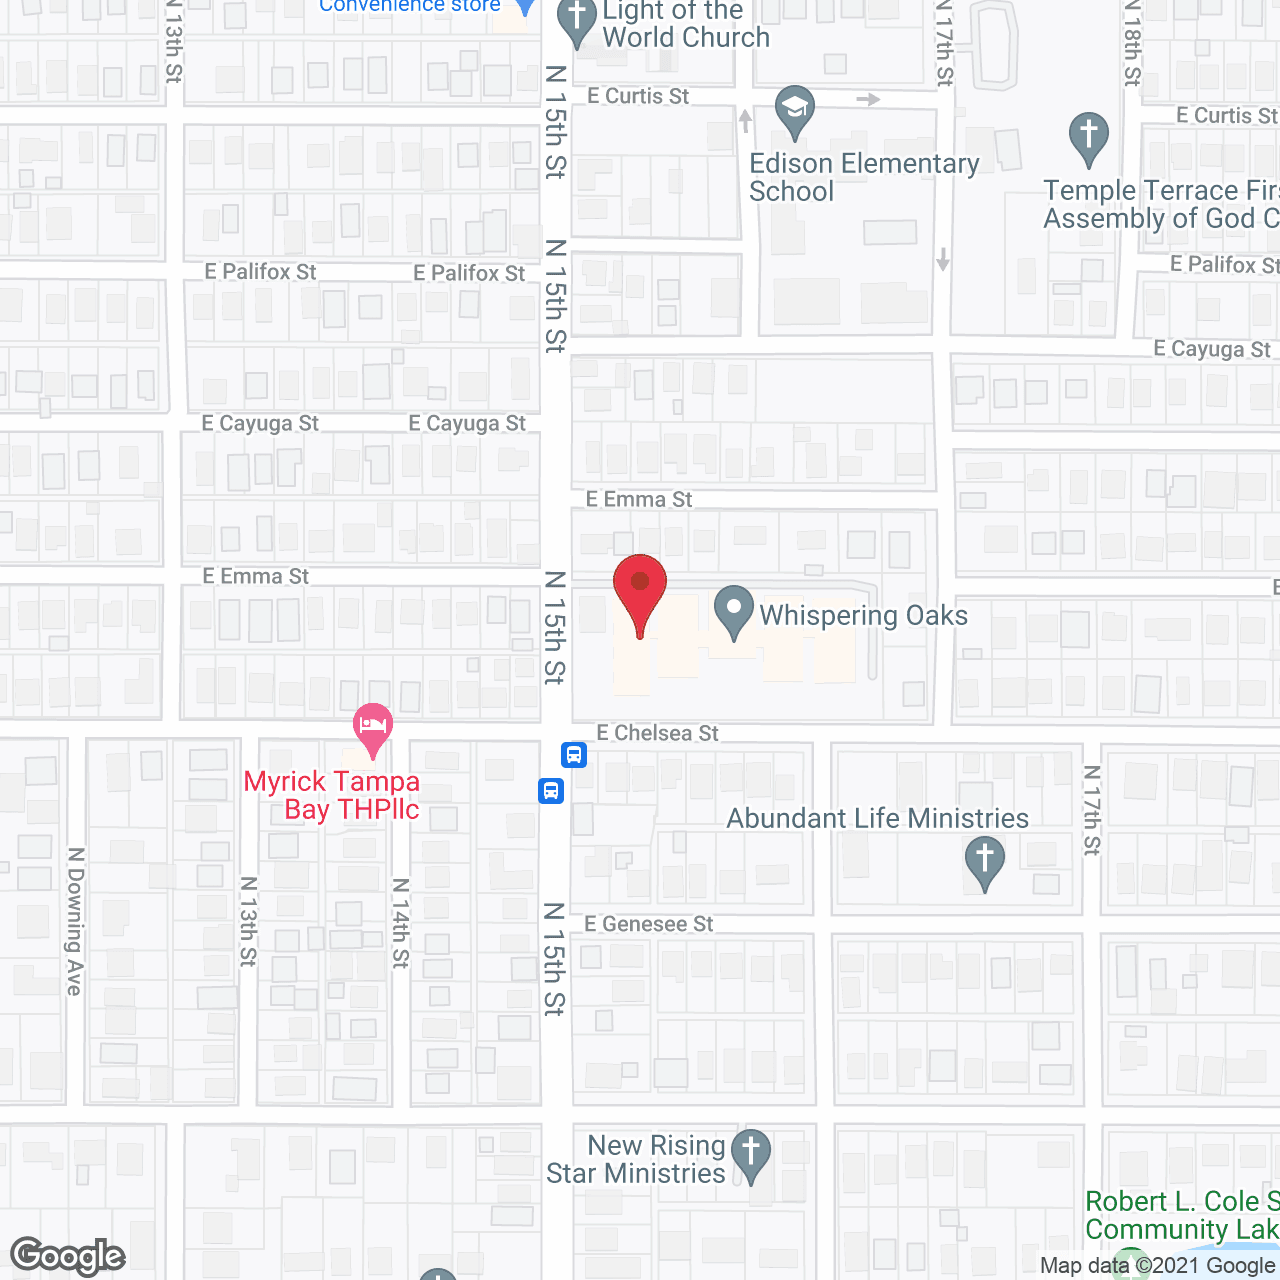 Whispering Oaks in google map